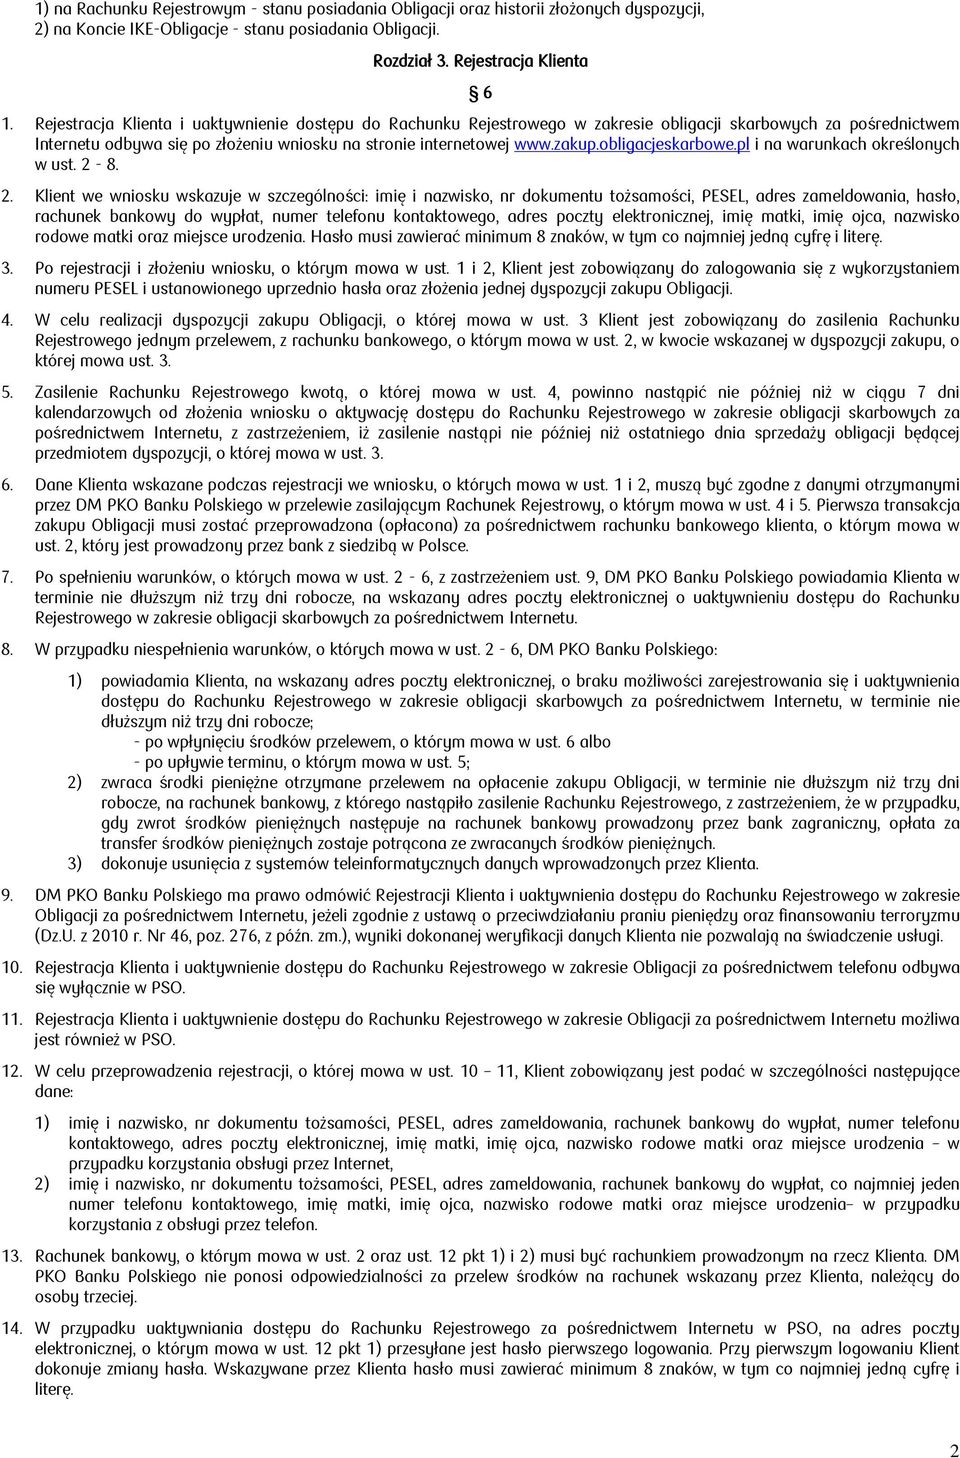 obligacjeskarbowe.pl i na warunkach określonych w ust. 2-